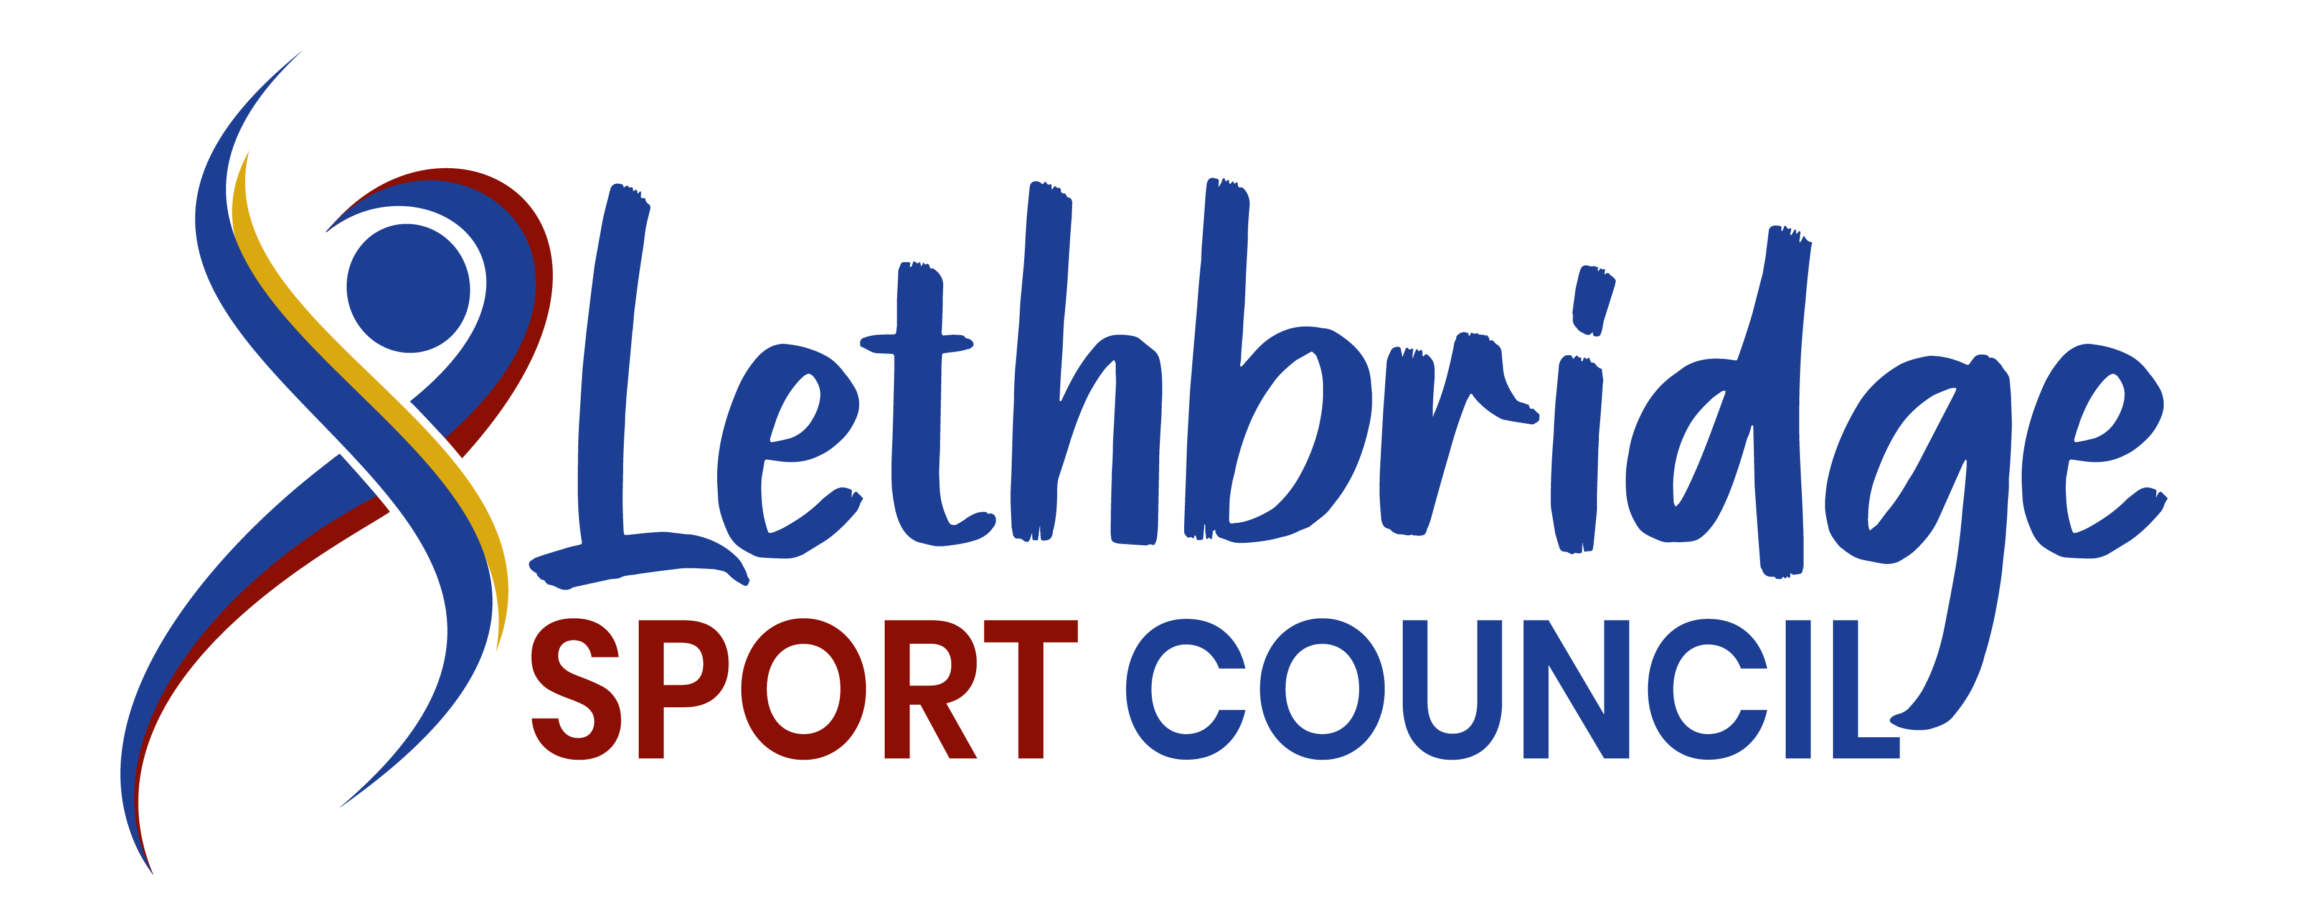 Lethbridge Sport Council